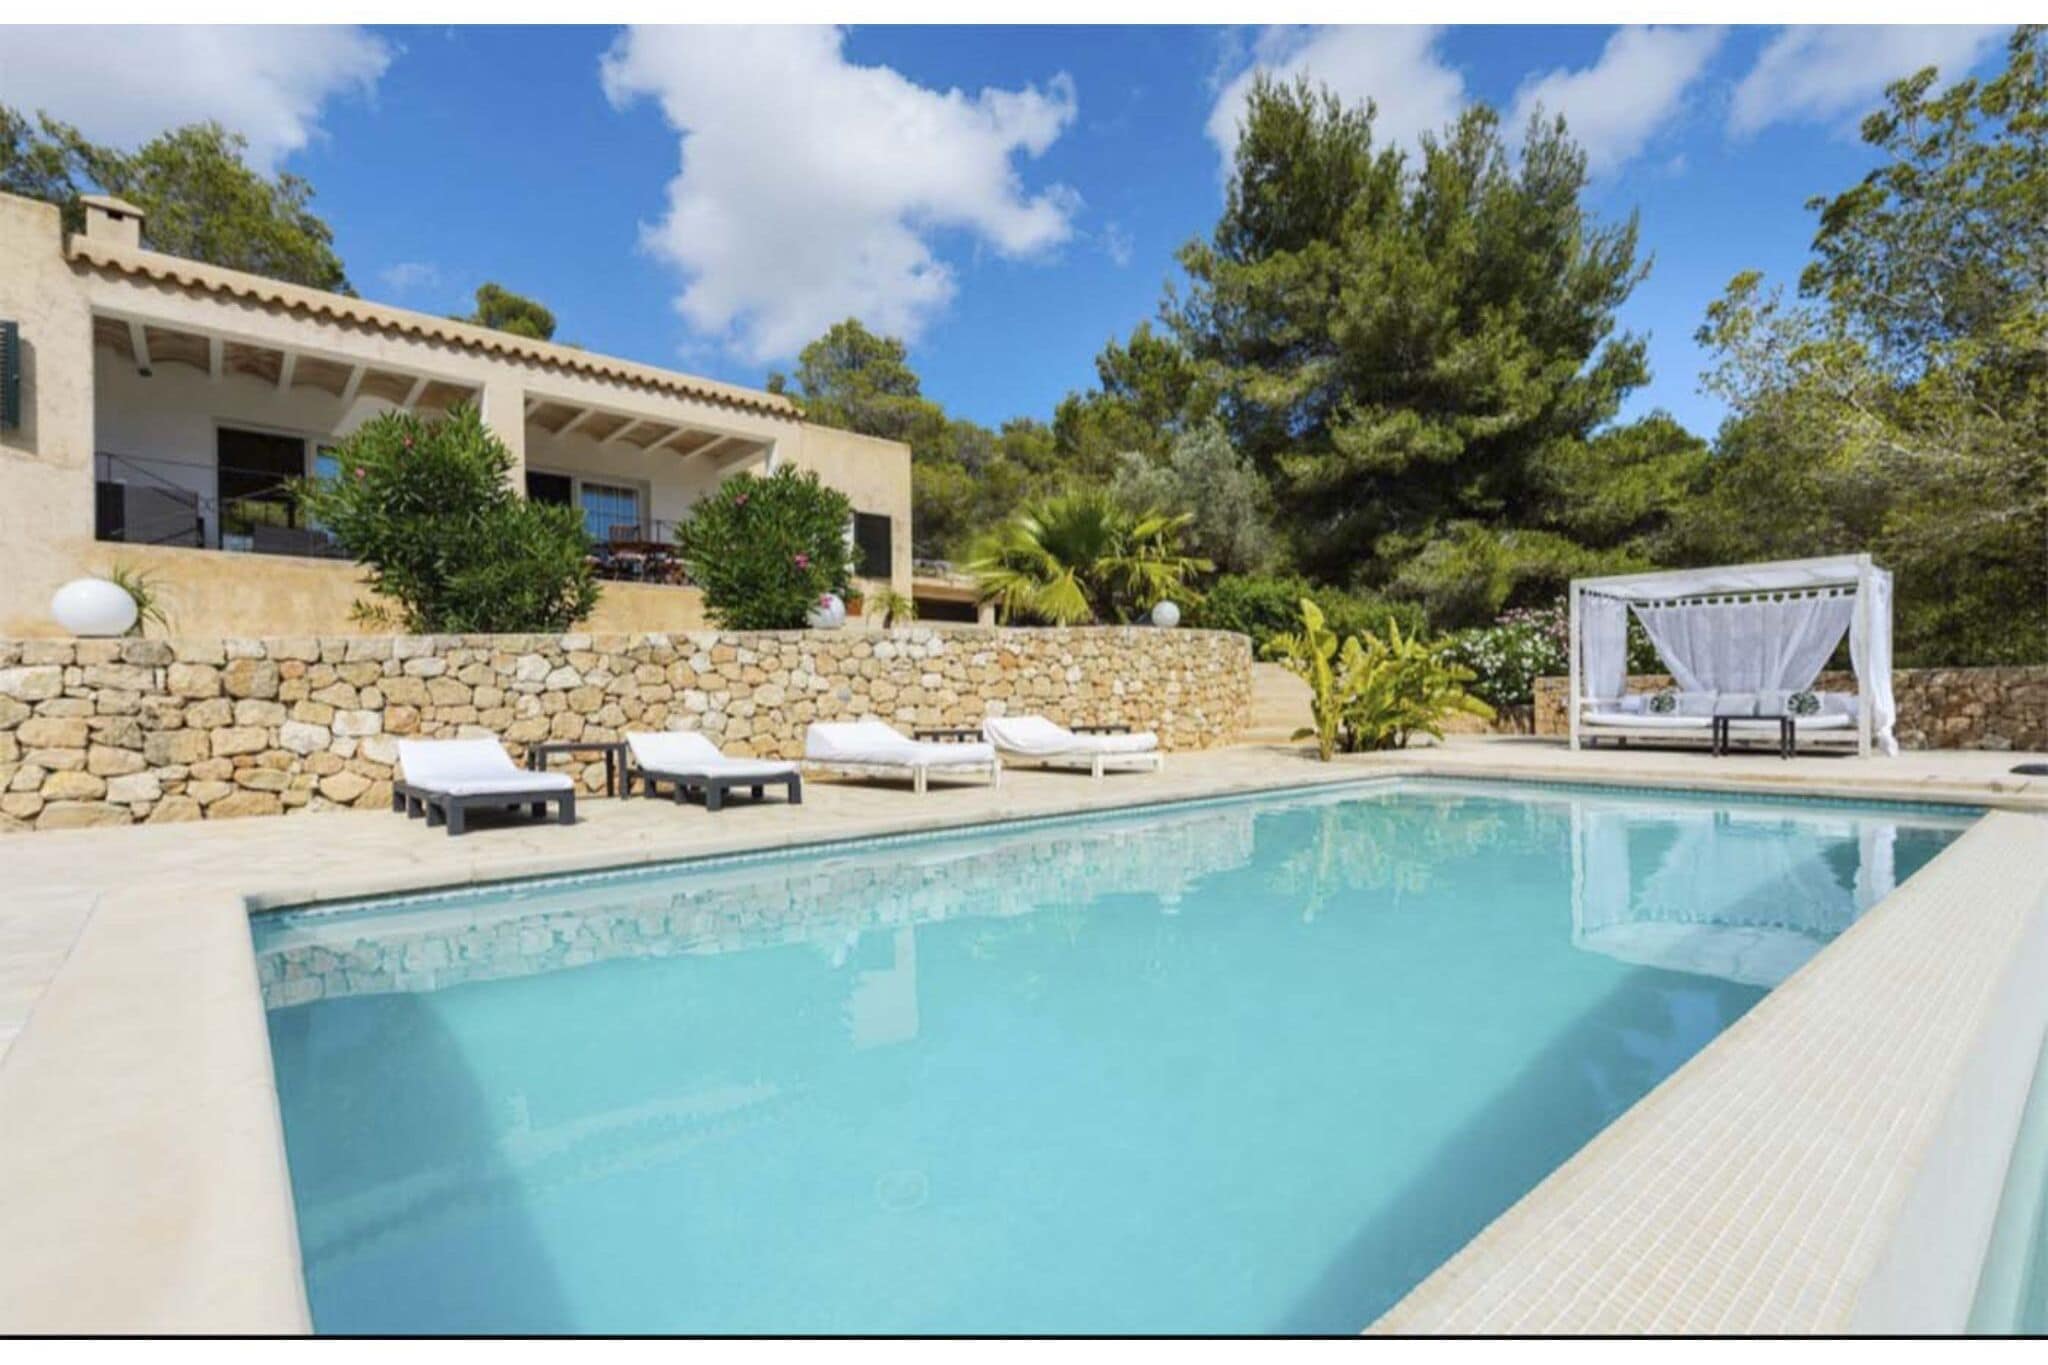 Vrijstaande villa op Ibiza met geweldig uitzicht op de heuvels